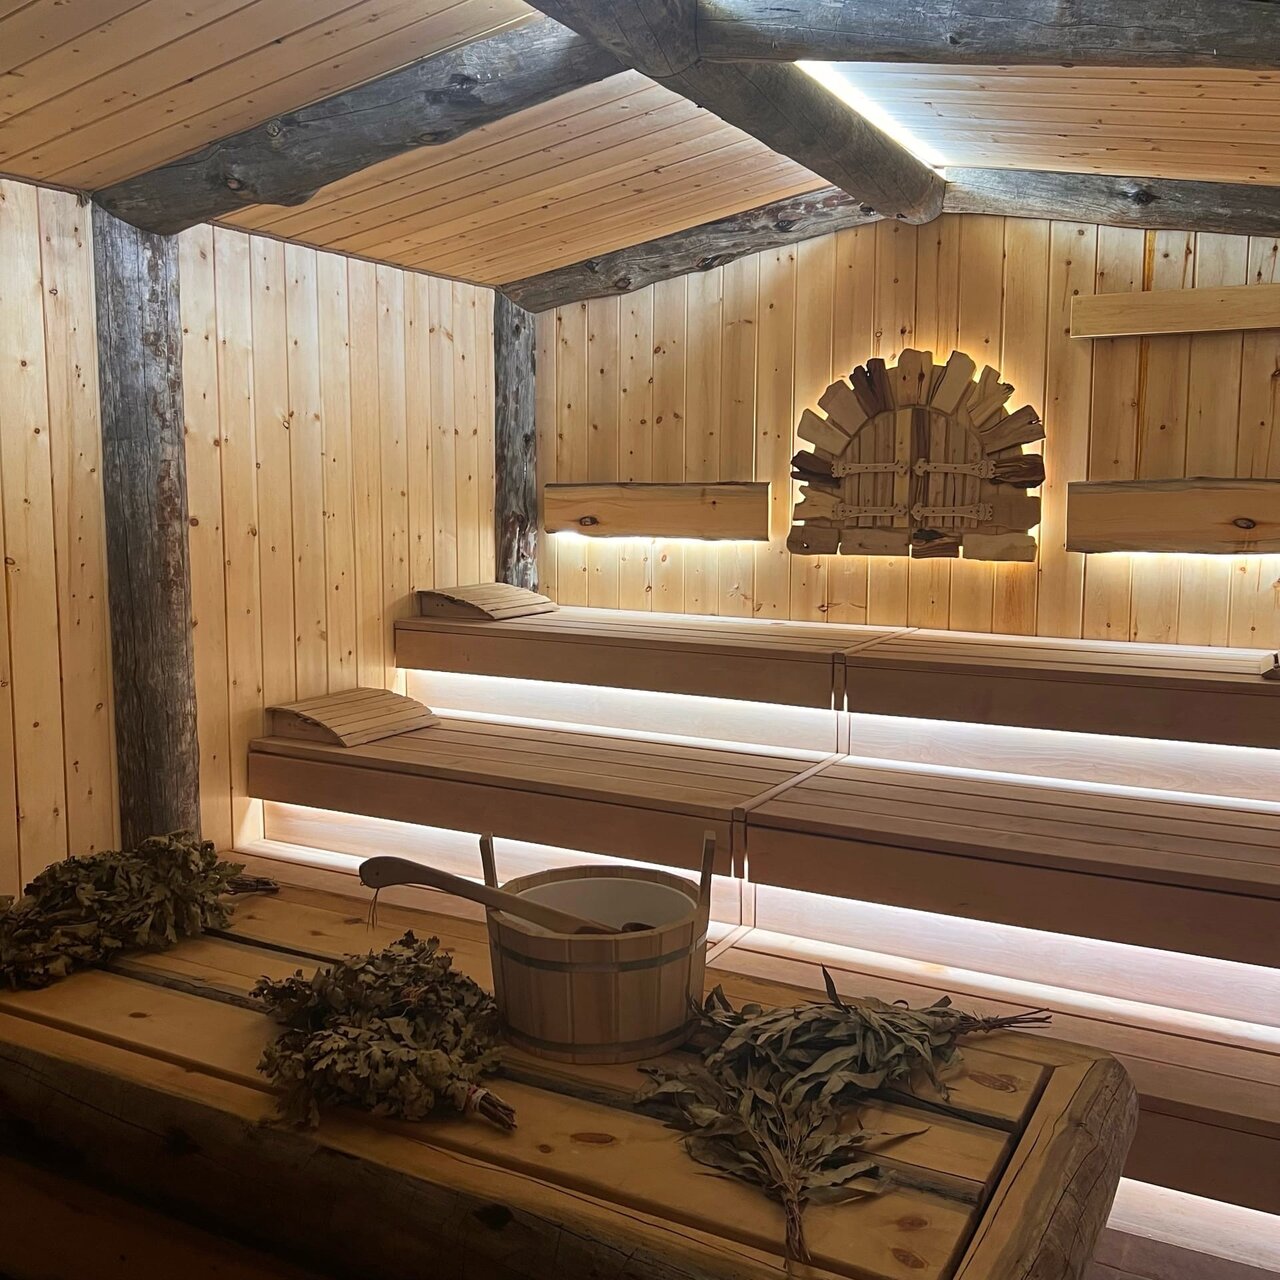 «7 мест, где попариться в бане в Симферополе» фото материала